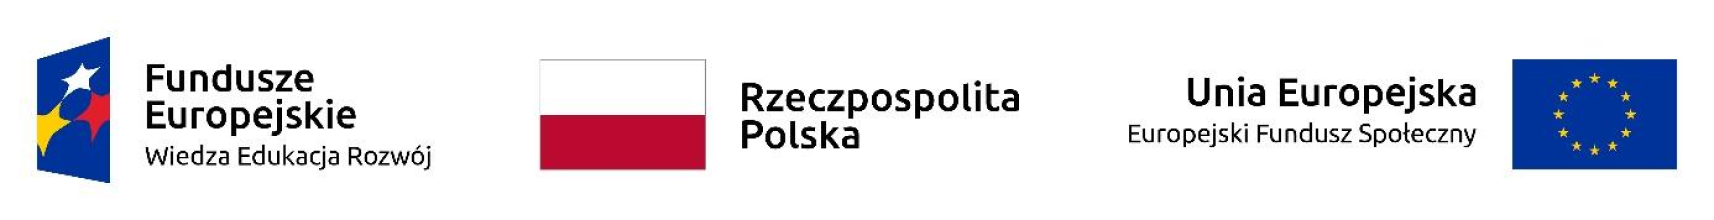 Zestaw znaków: Fundusze Europejskie Wiedza Edukacja Rozwój, Rzeczpospolita Polska i Unia Europejska europejski Fundusz Społeczny.